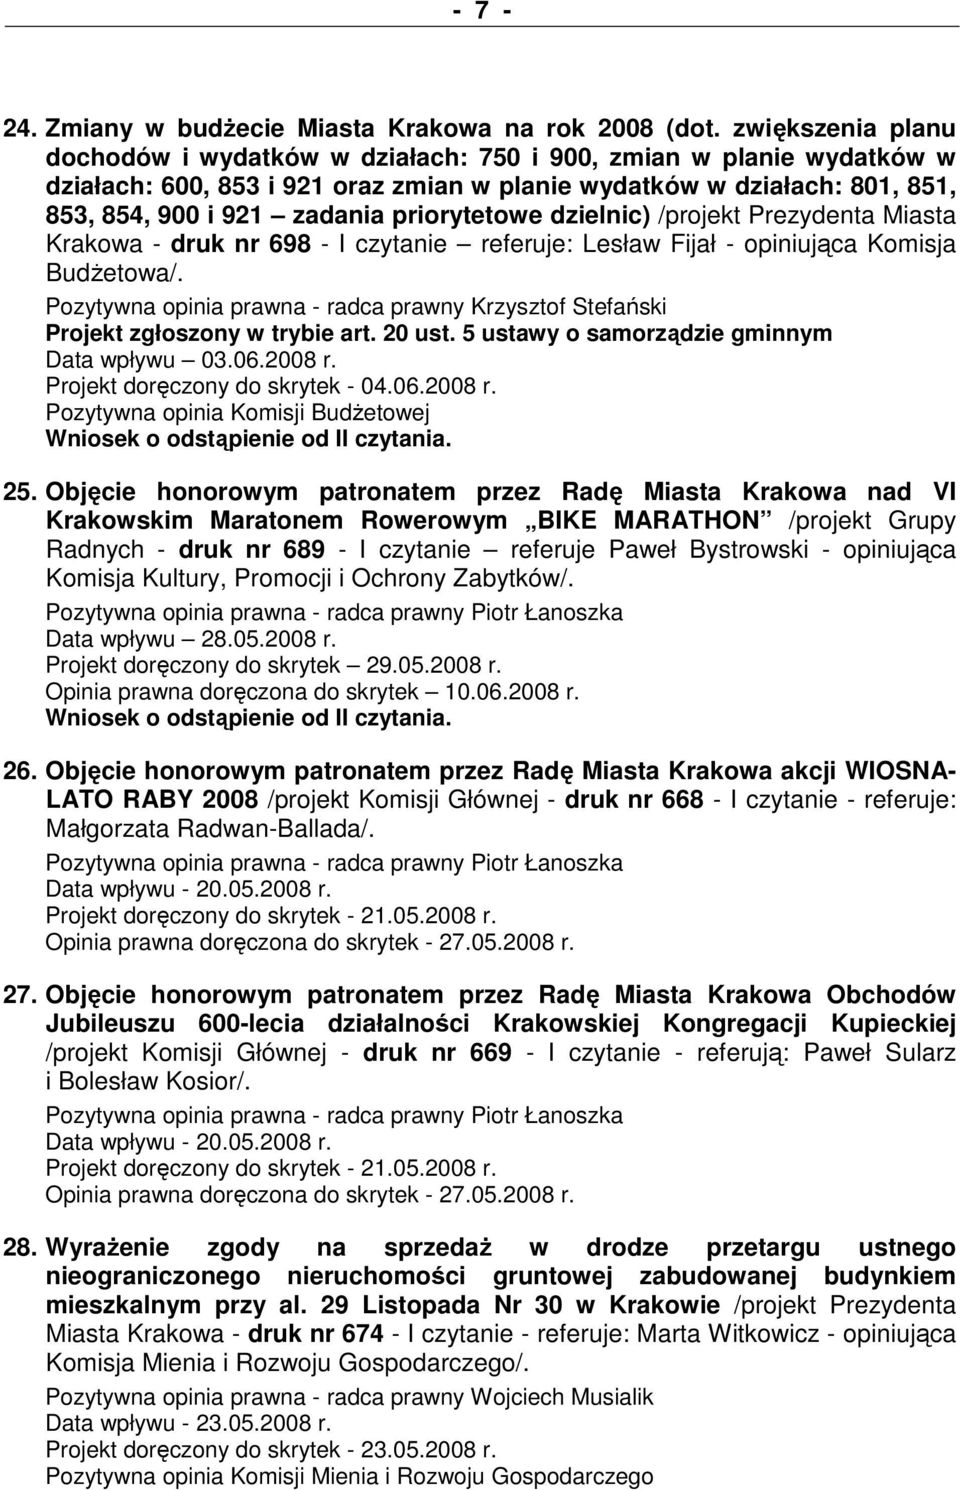 priorytetowe dzielnic) /projekt Prezydenta Miasta Krakowa - druk nr 698 - I czytanie referuje: Lesław Fijał - opiniująca Komisja BudŜetowa/.